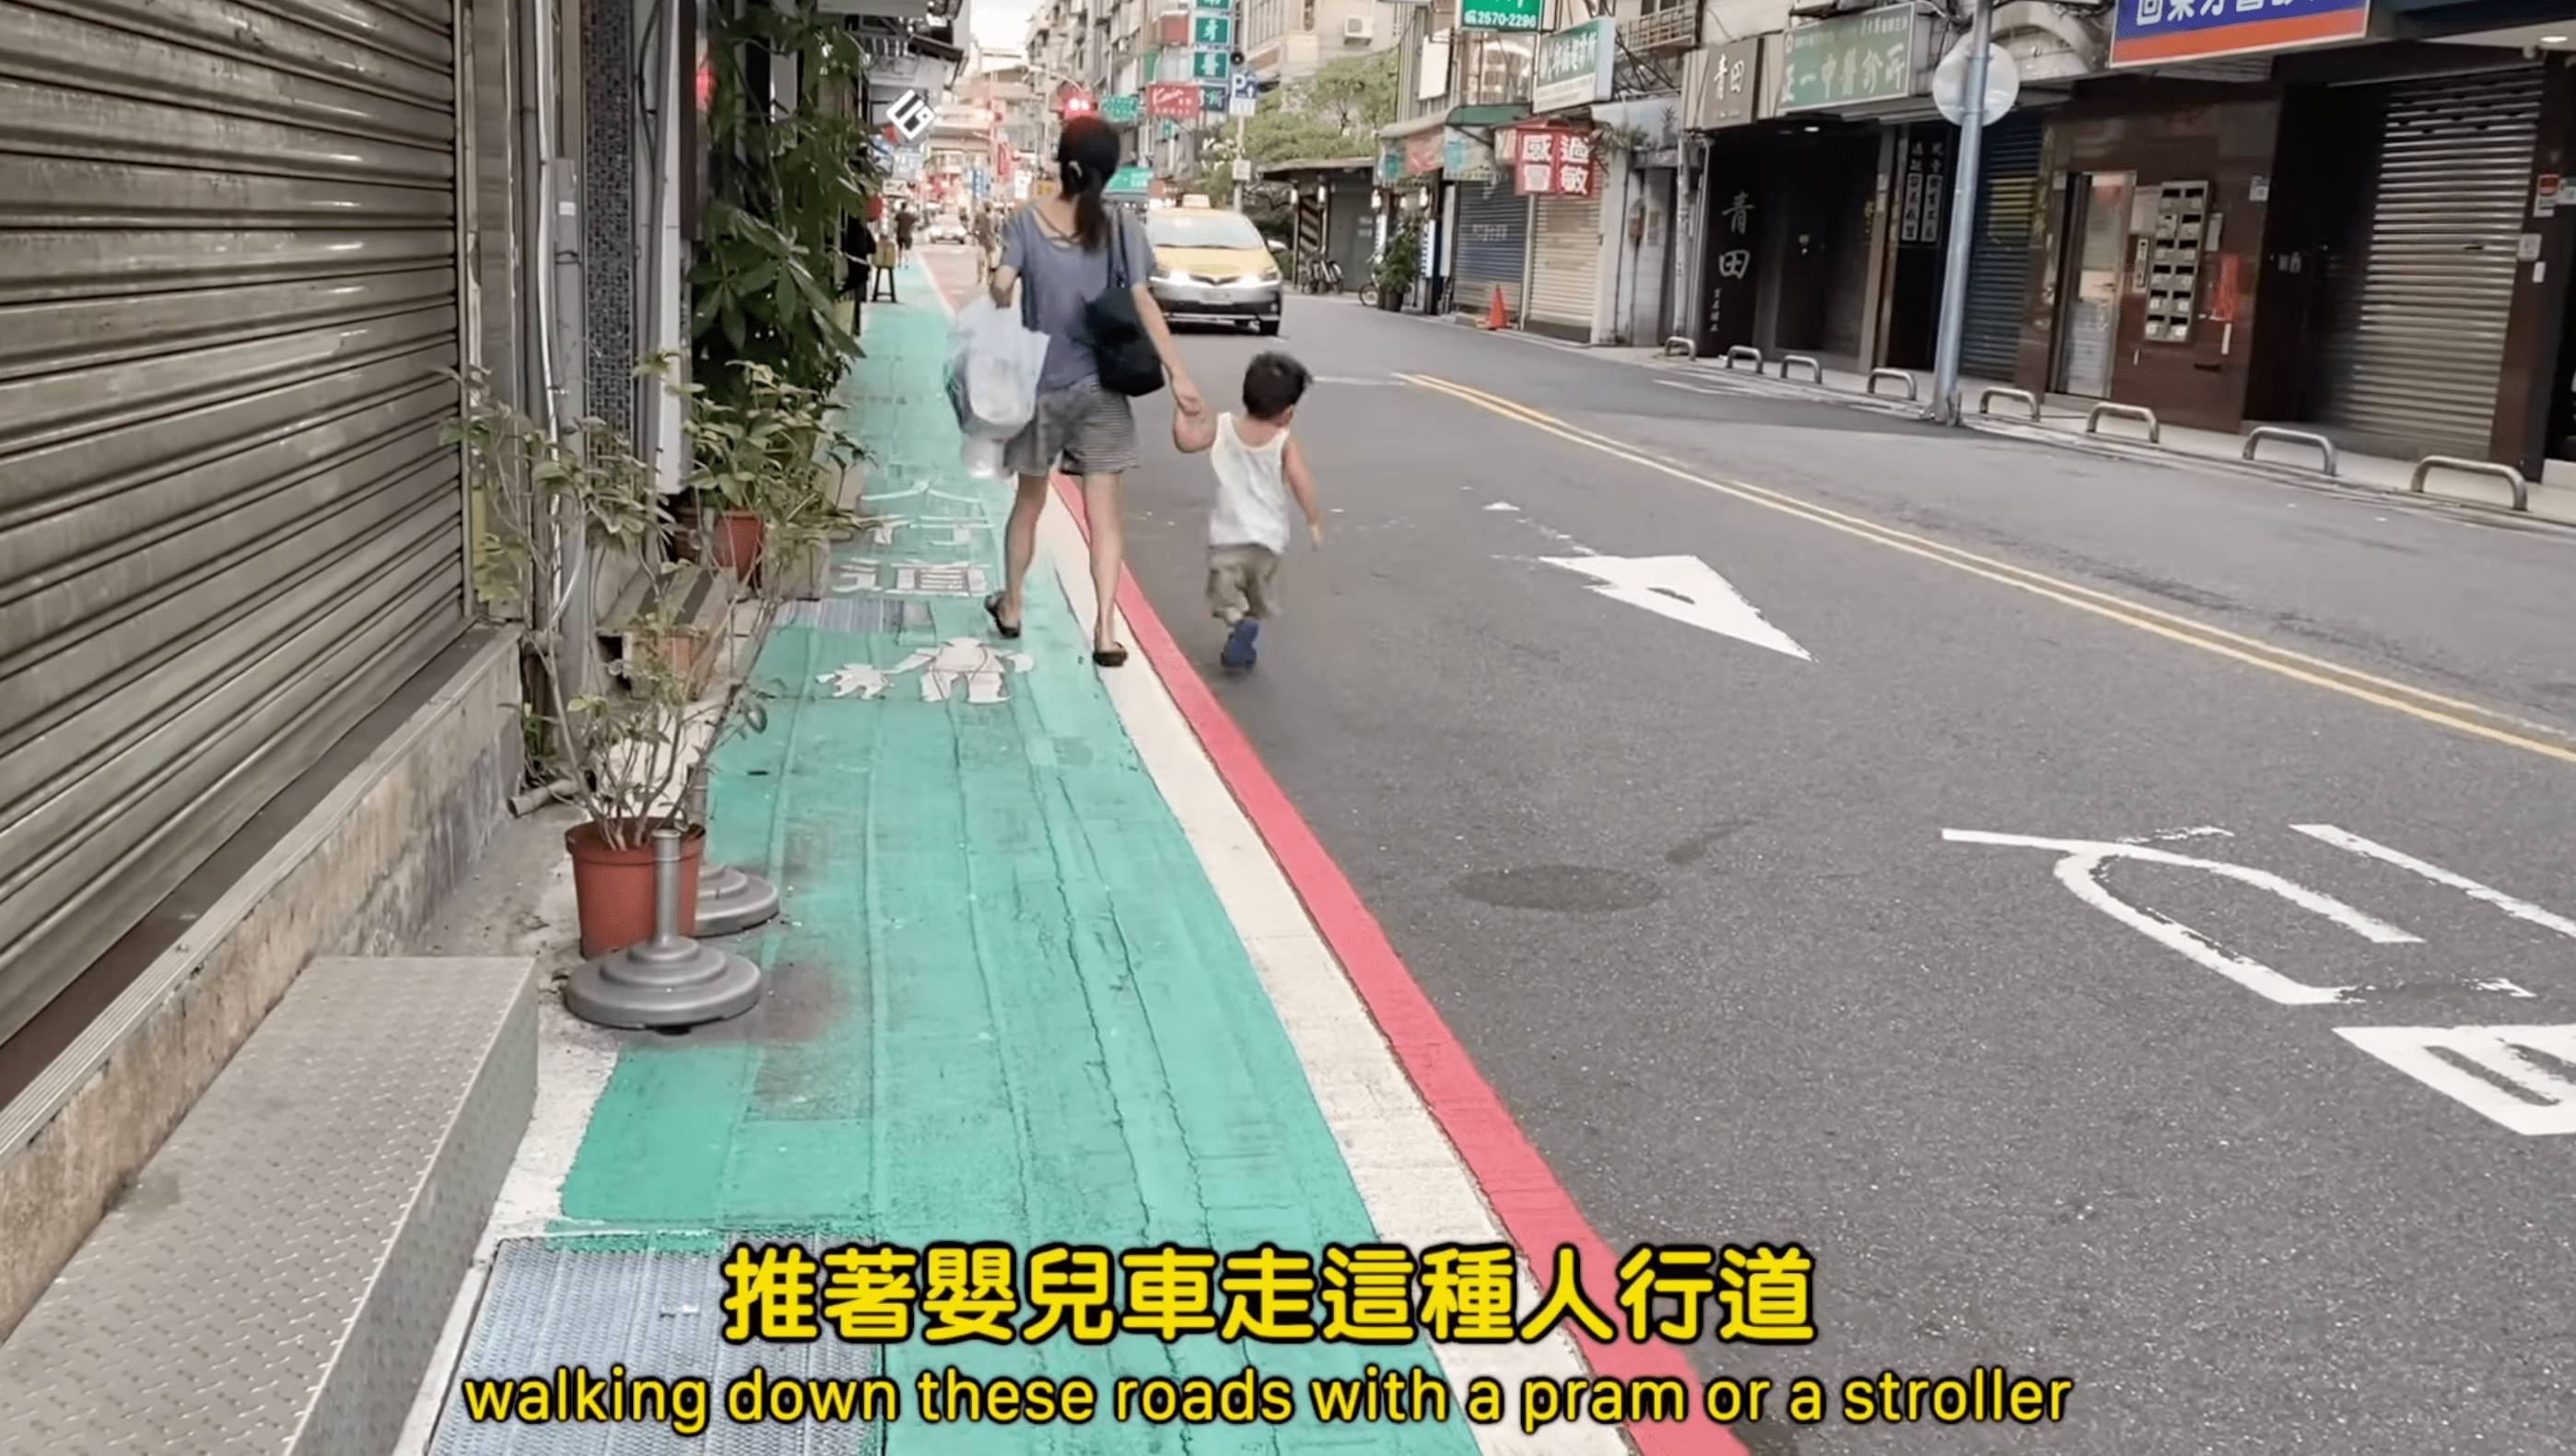 美國YouTuber崔璀璨分享台灣交通安全問題